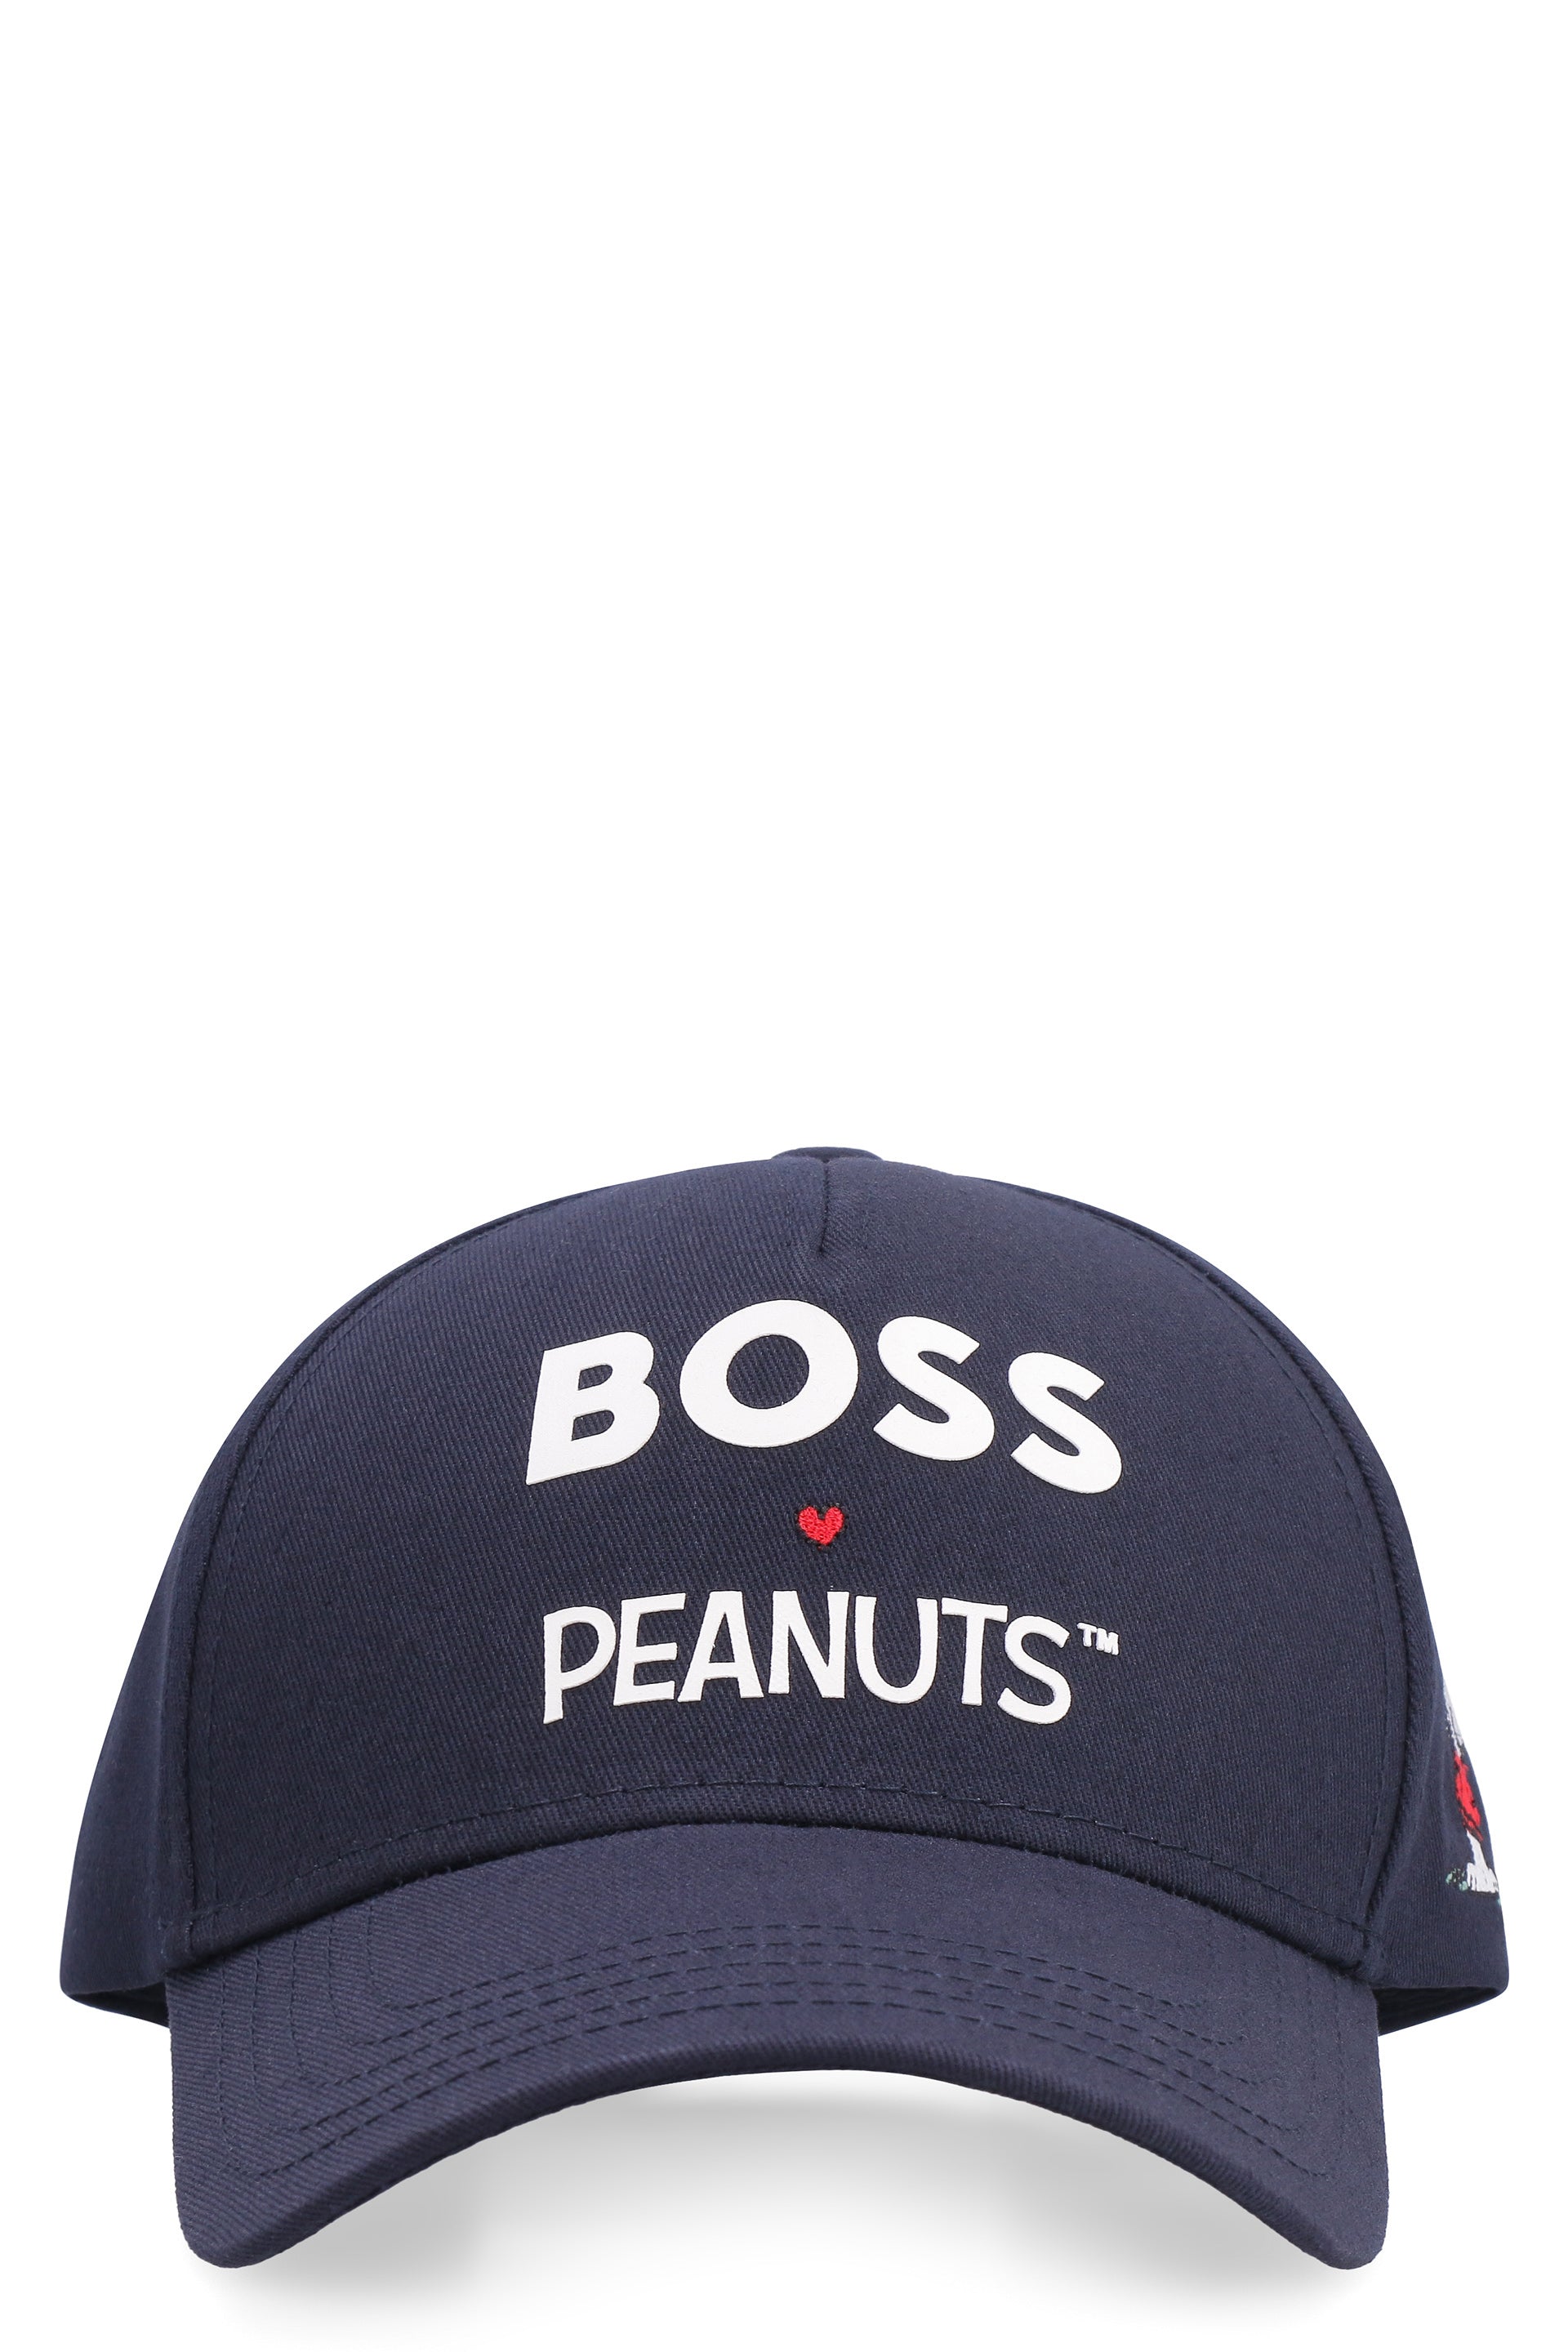 BOSS - BOSS x PEANUTS - Printed baseball cap blue - The Corner